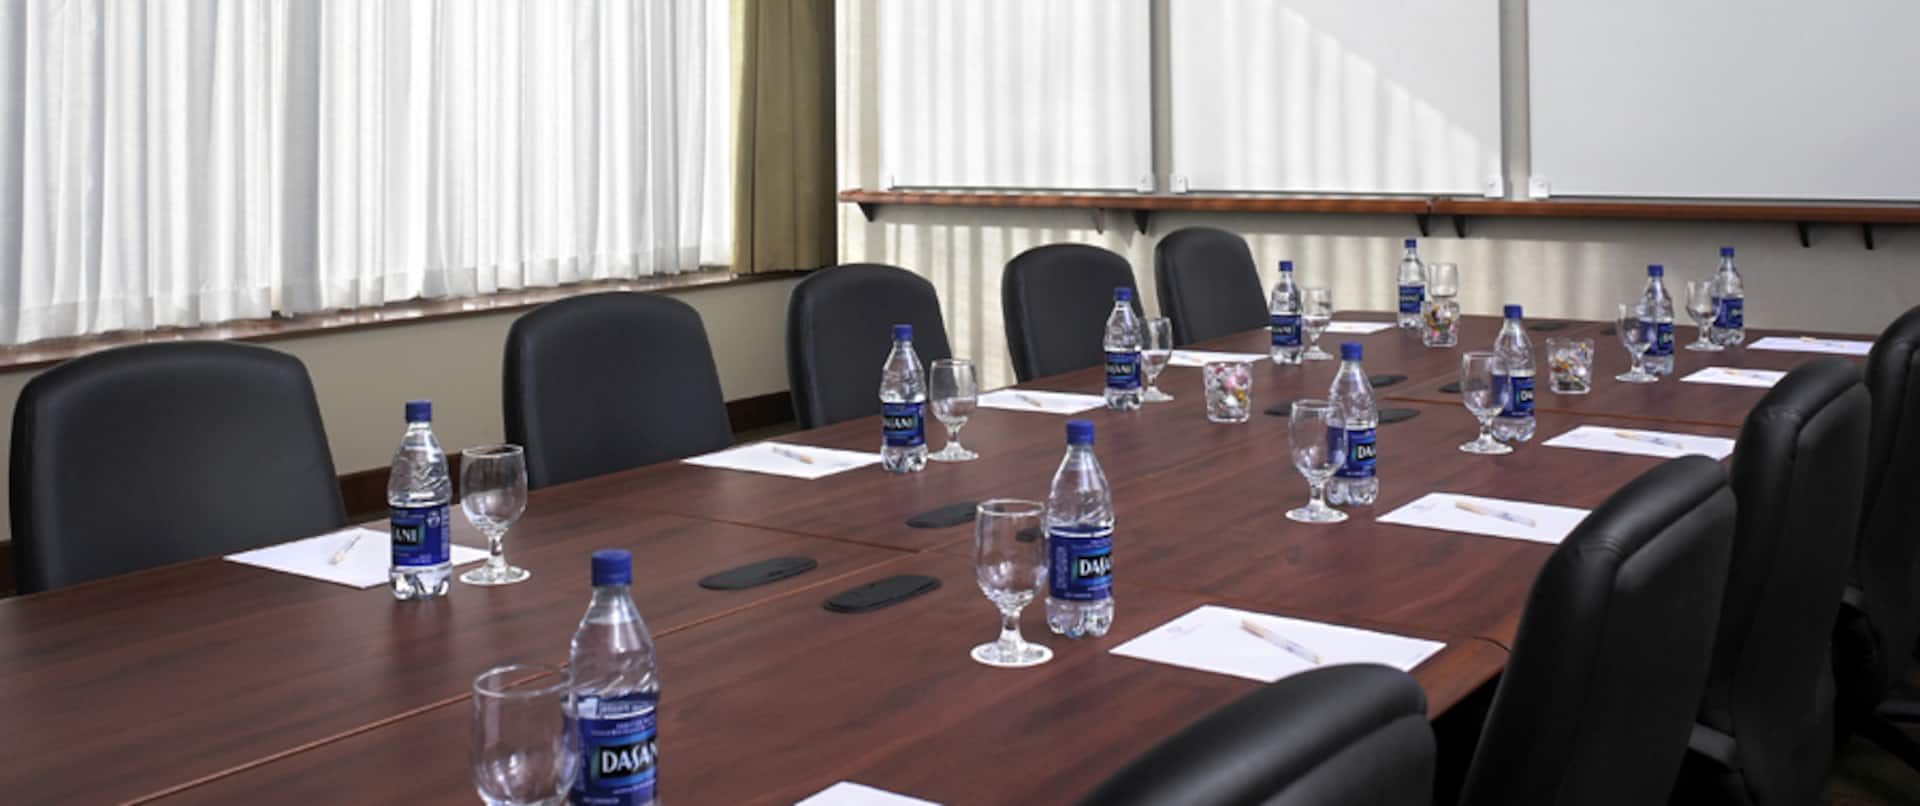 EMC Boardroom Style Meeting Room